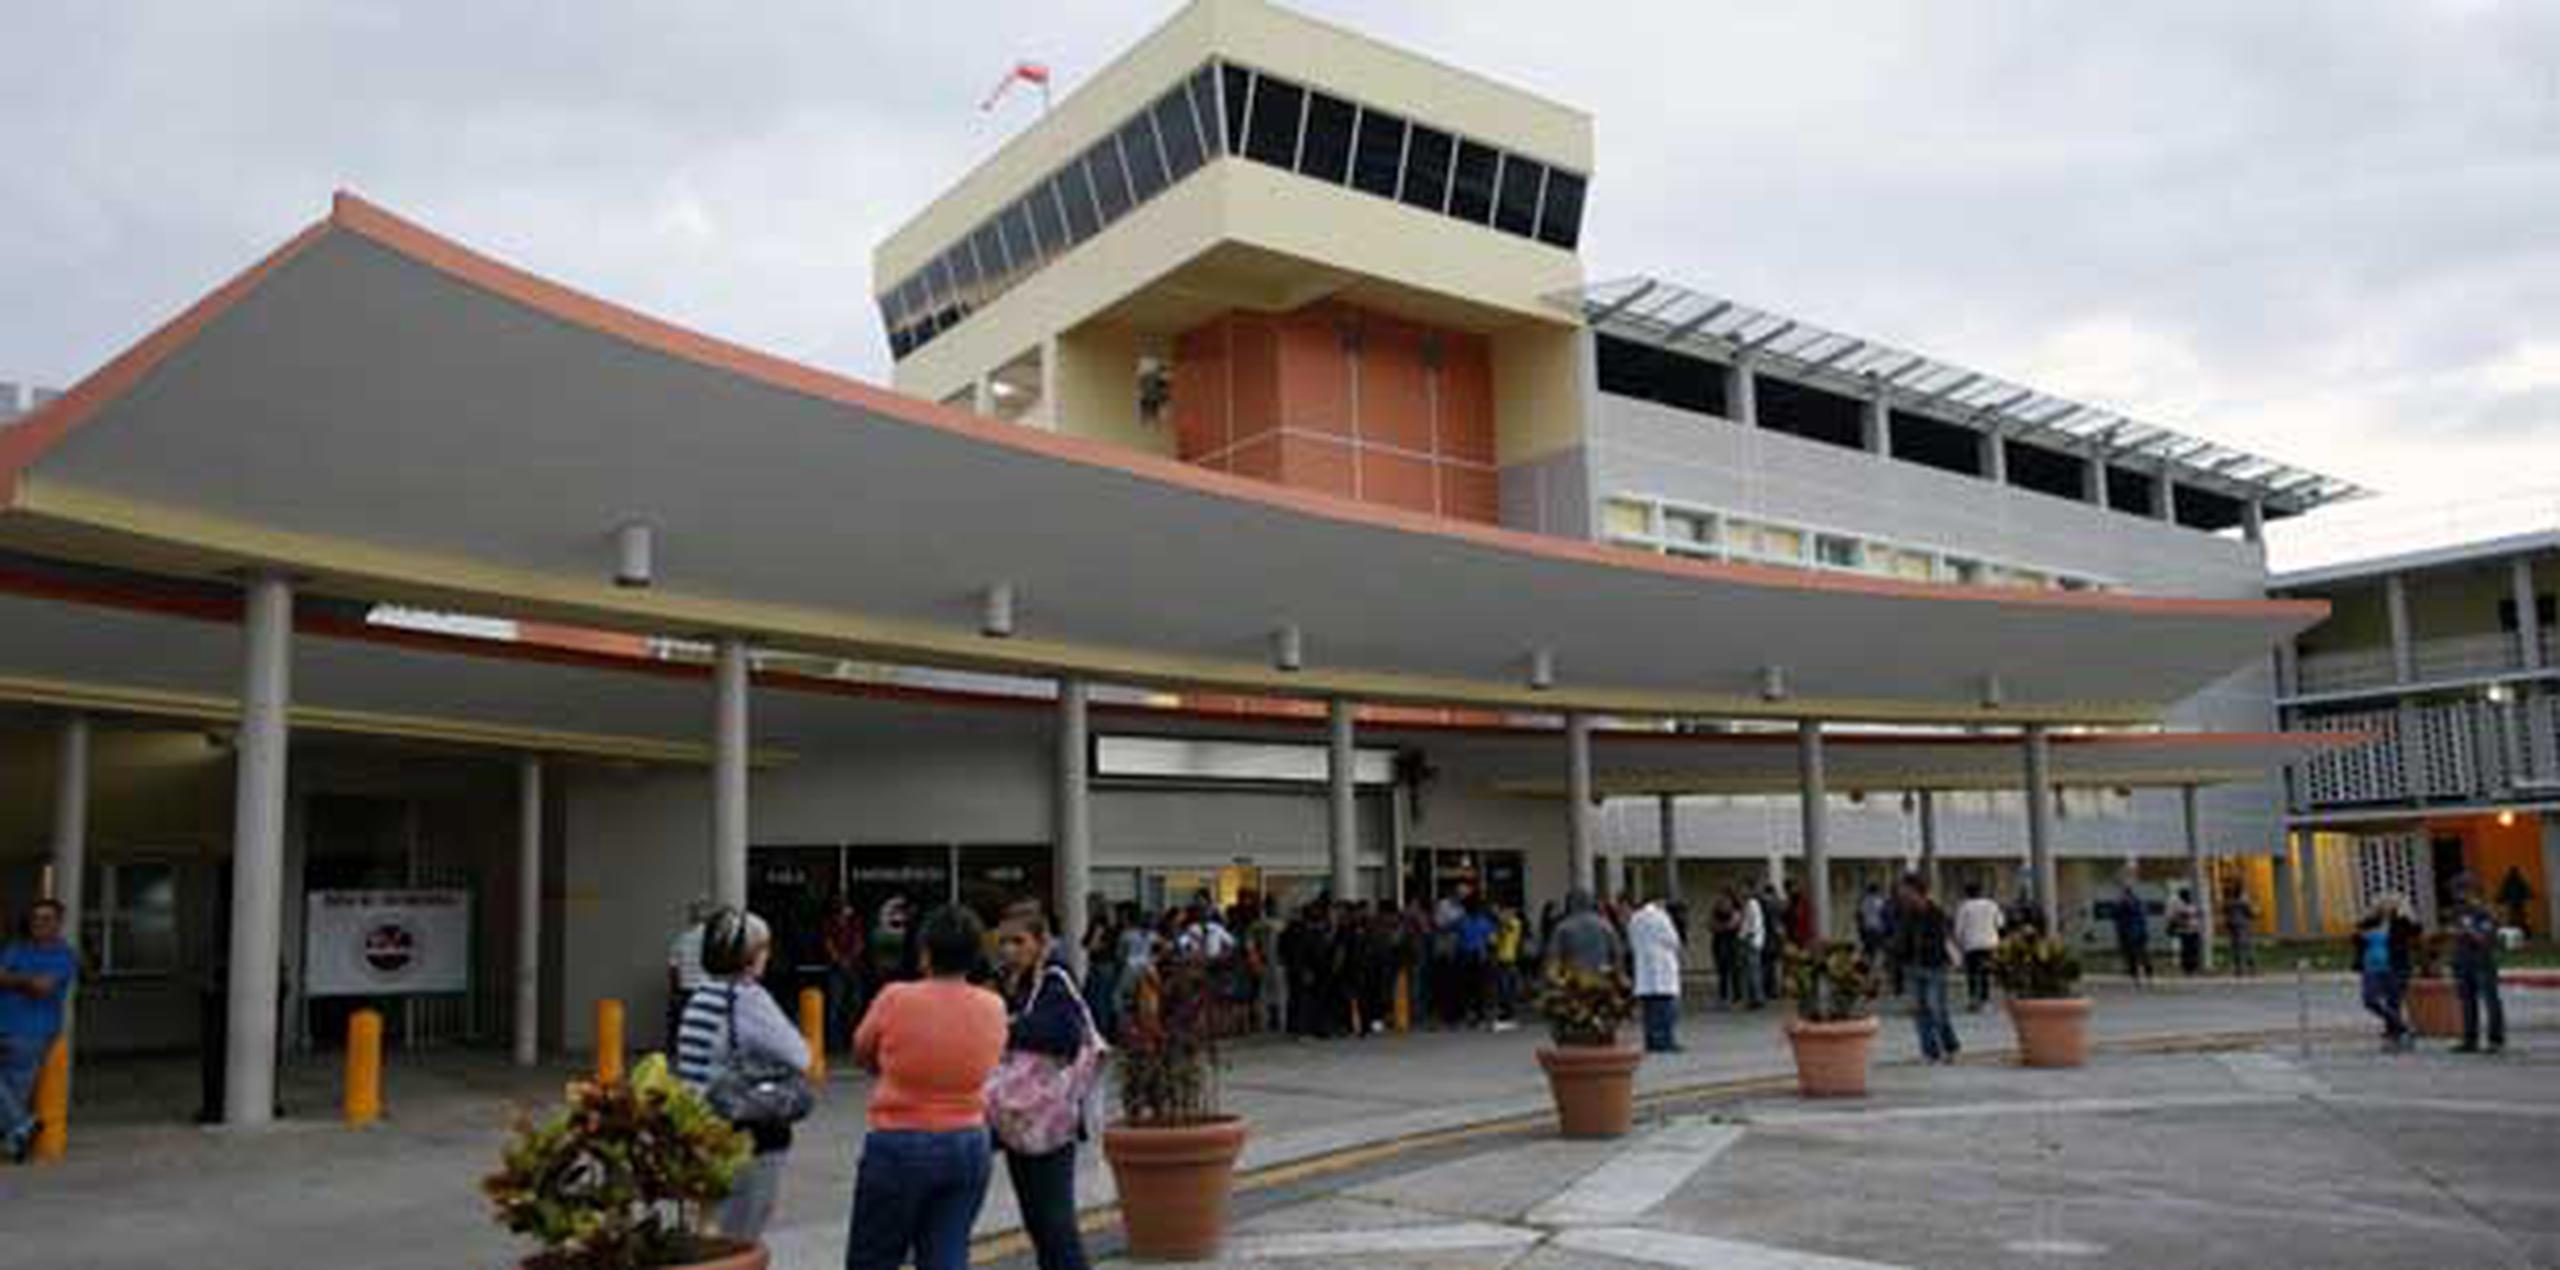 La víctima fue trasladada al Hospital Caribbean de Fajardo y posteriormente transportada vía ambulancia aérea al Centro Médico de Río Piedras en condición delicada. (Archivo)